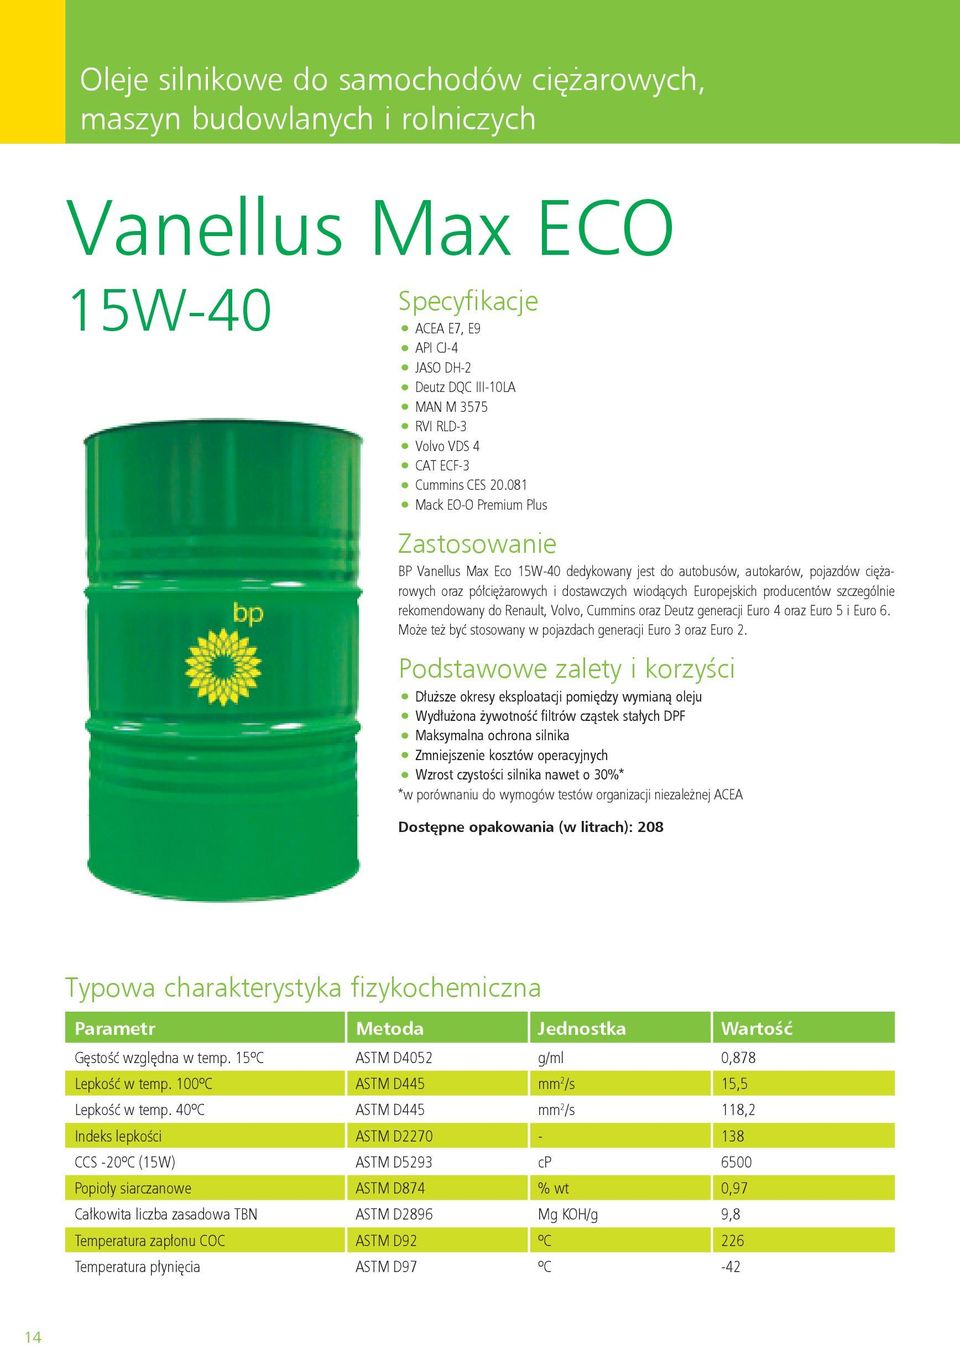 081 Mack EO-O Premium Plus BP Vanellus Max Eco 15W-40 dedykowany jest do autobusów, autokarów, pojazdów ciężarowych oraz półciężarowych i dostawczych wiodących Europejskich producentów szczególnie